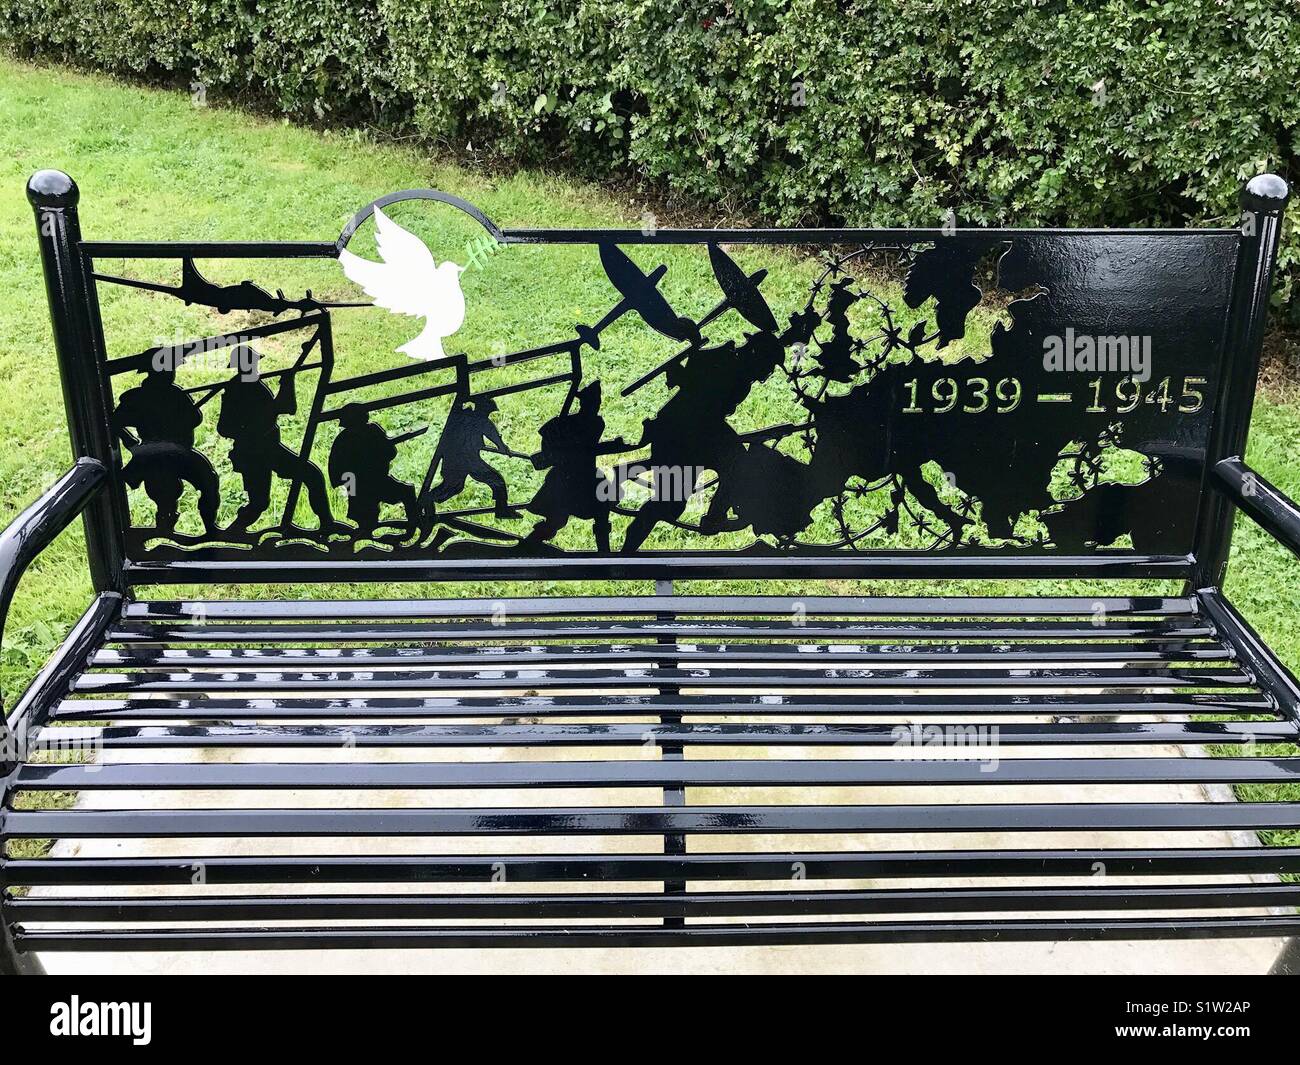 Metalwork design  commemorating World War II on a seat in memorial garden Stock Photo